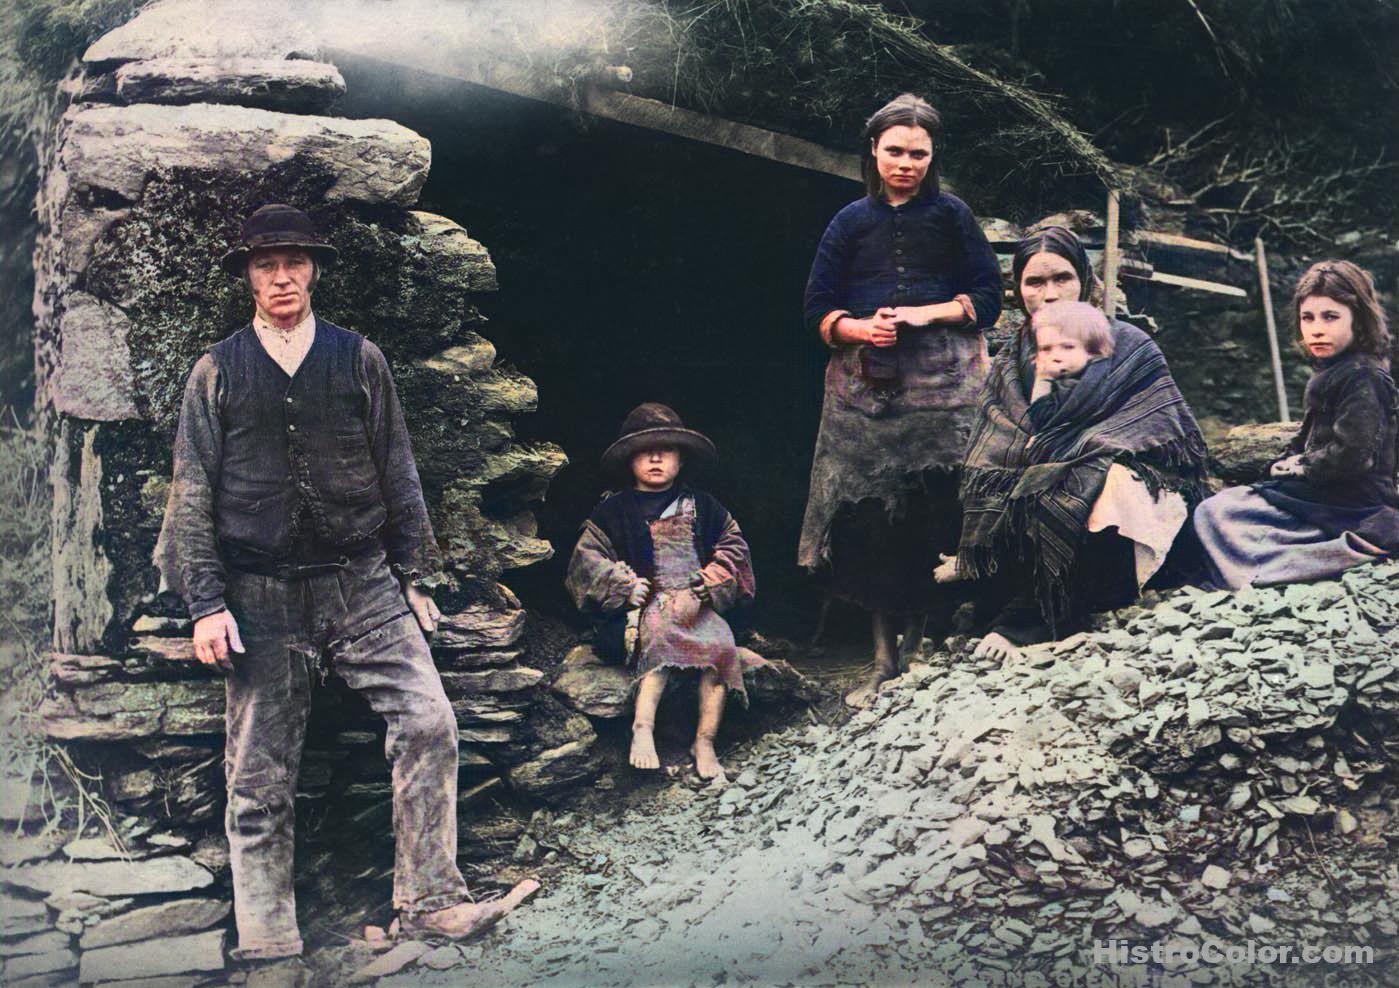 Evicted Irish Tenant Farming Family